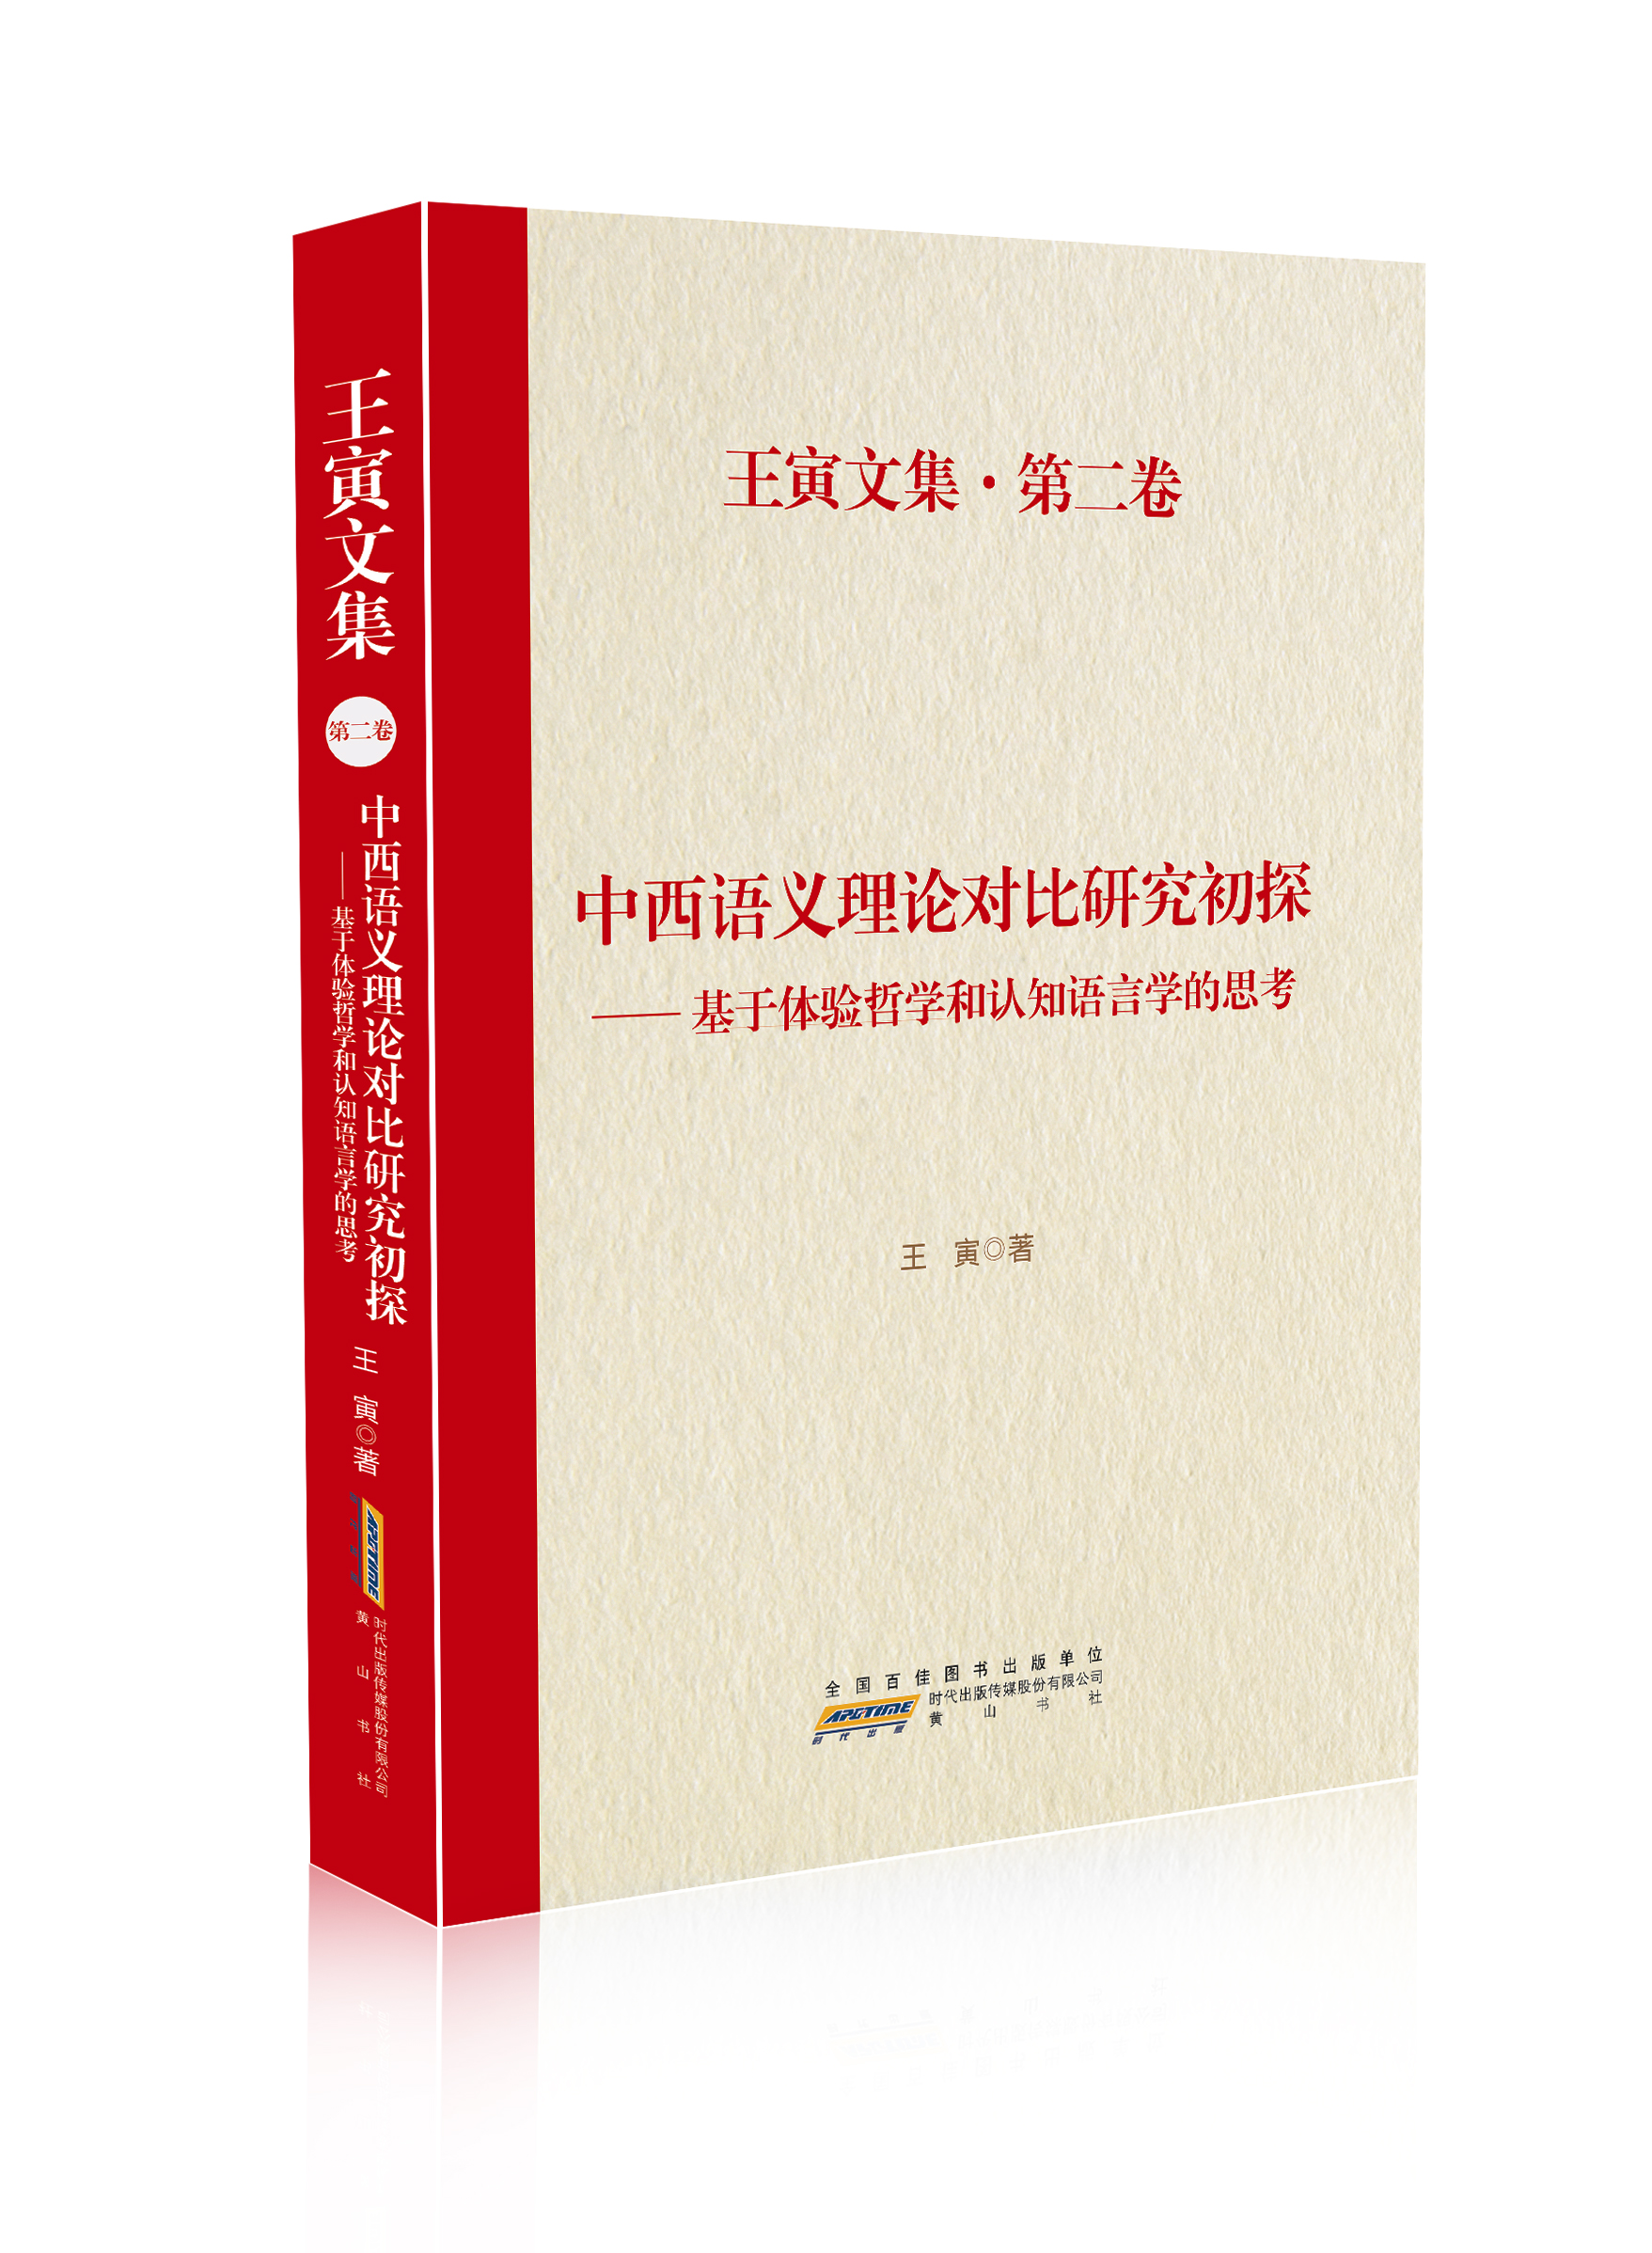 中西语义理论对比研究初探：基于体验哲学和认知语言学的思考